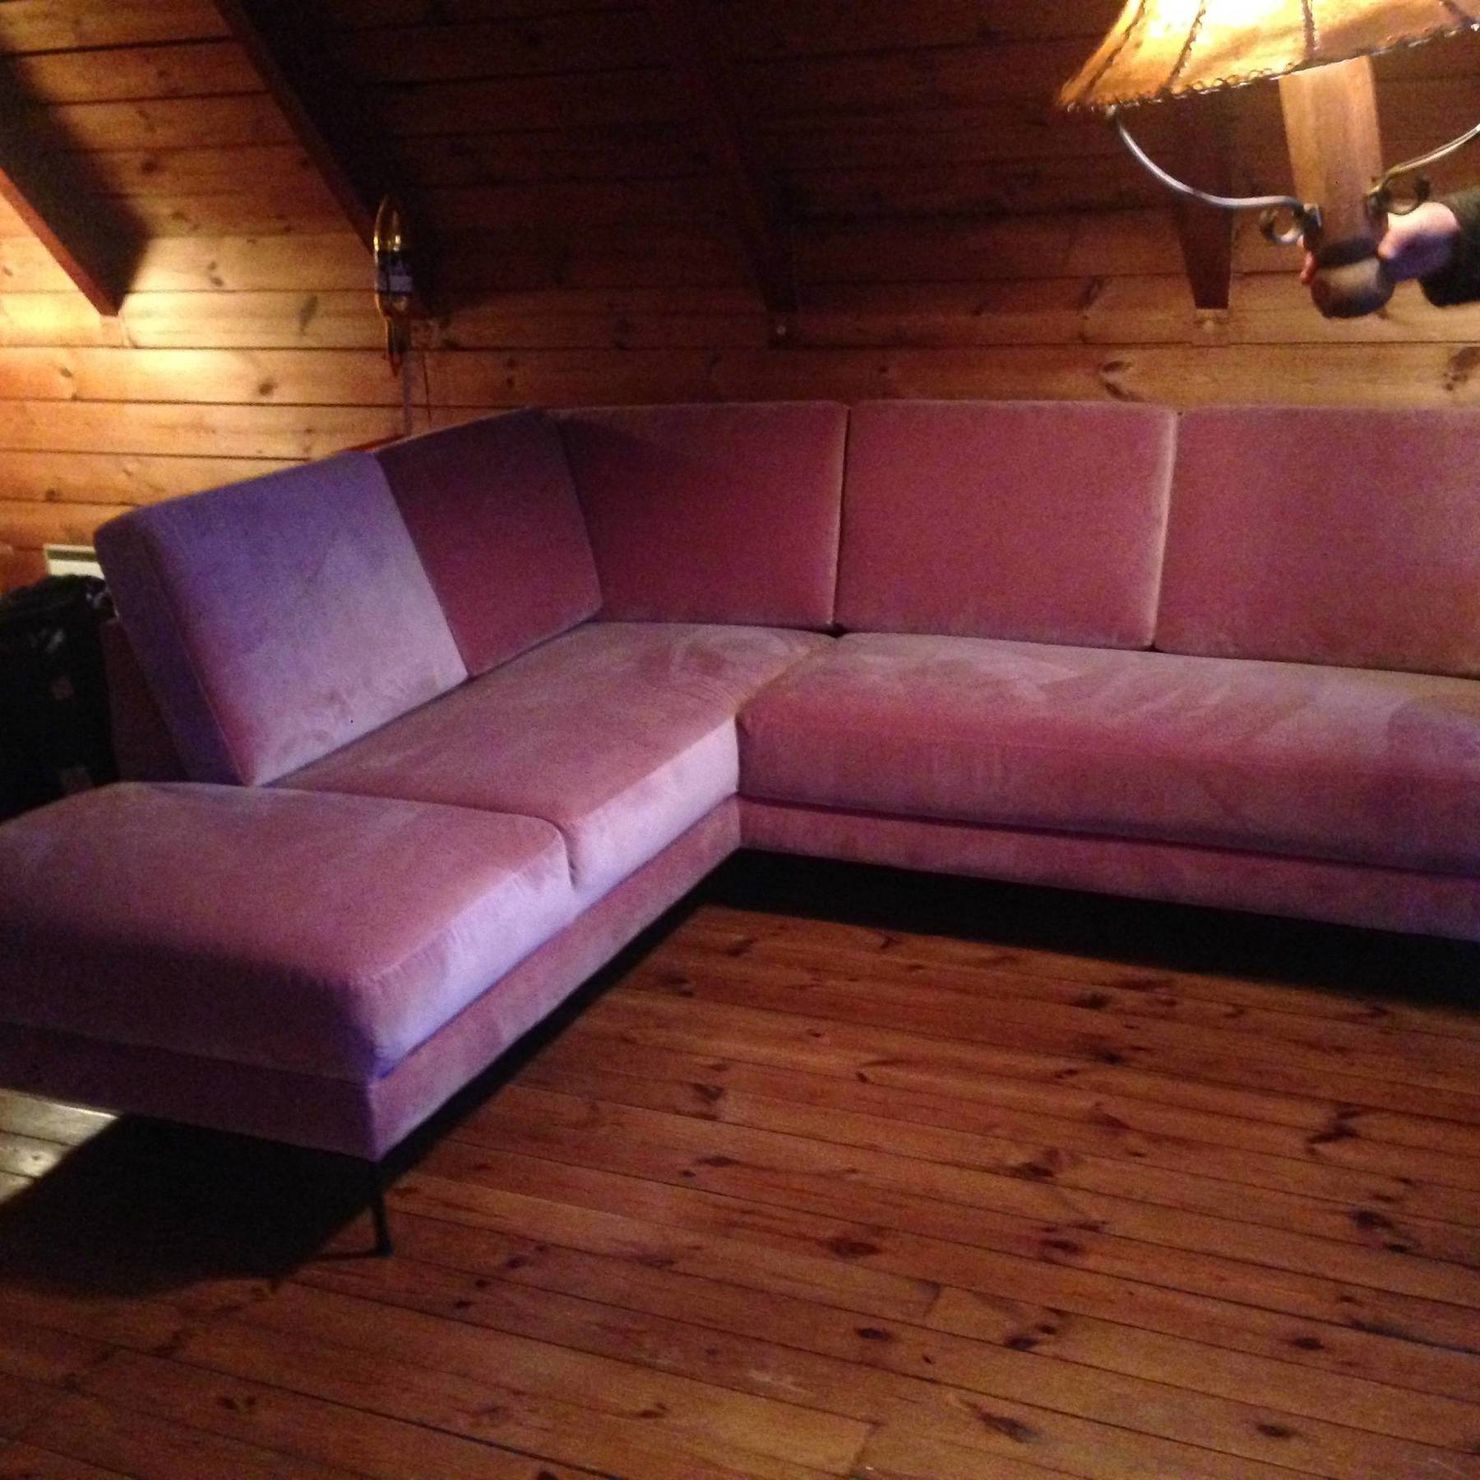 Zum Entspannen, ausruhen oder in einem Buch schmökern: Die große Couch im Wohnzimmer